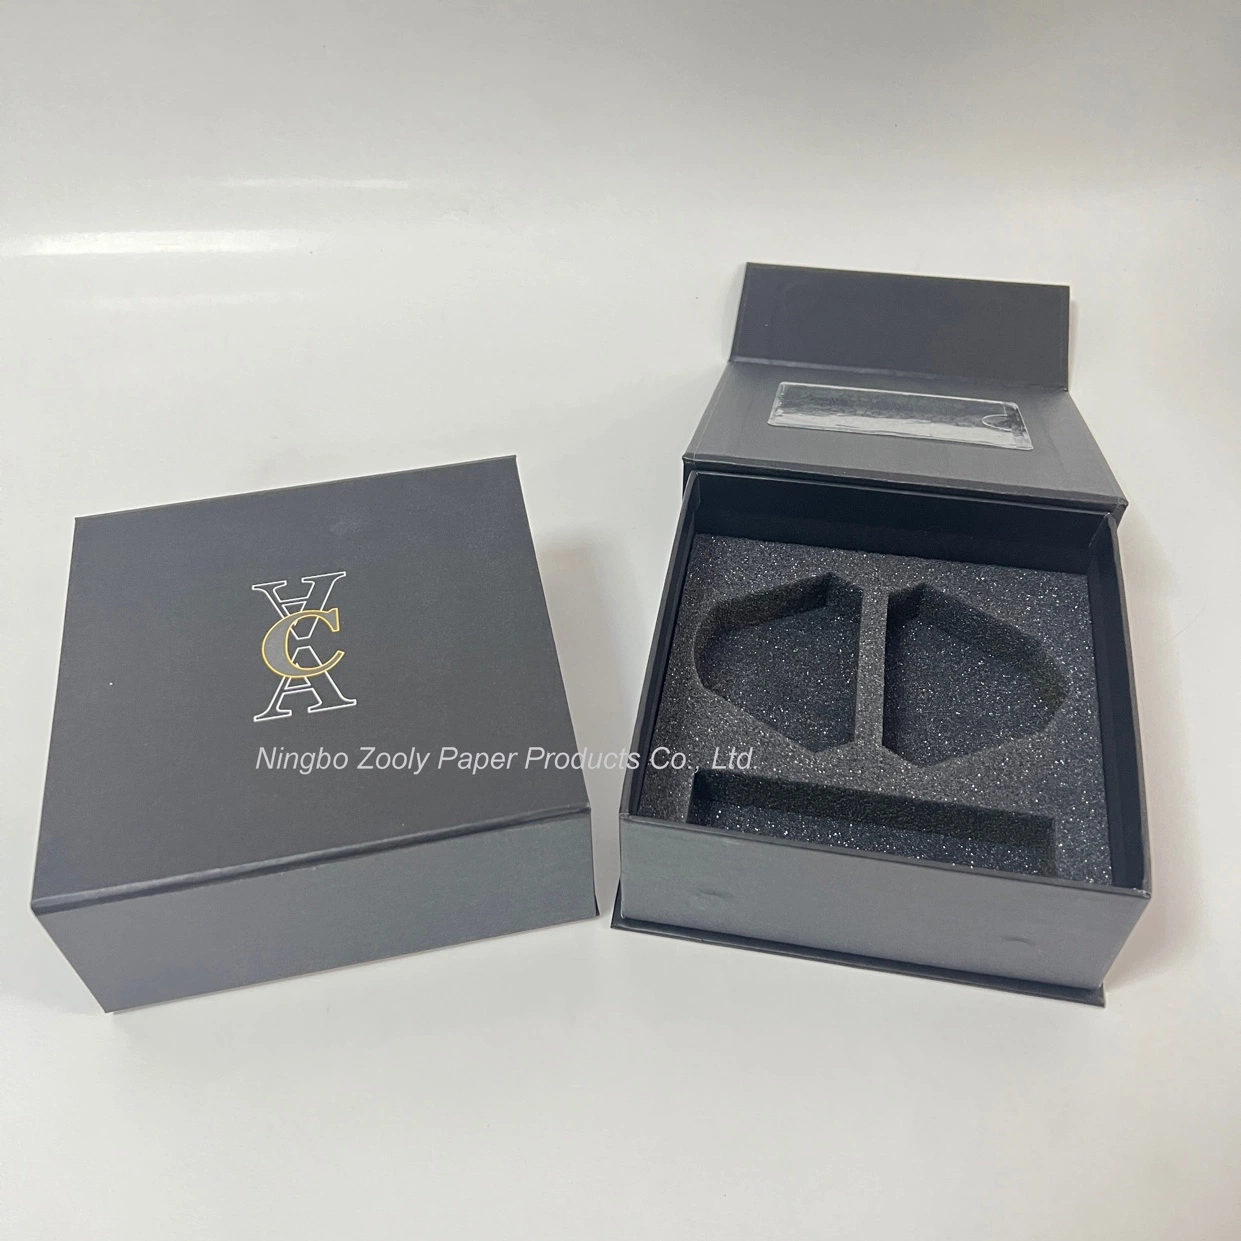 Benutzerdefinierte Logo magnetische Verschluss-Paket-Box mit Schaum-Papier einfügen Verpackung Kosmetische Box Öl Premium Parfüm Geschenkbox